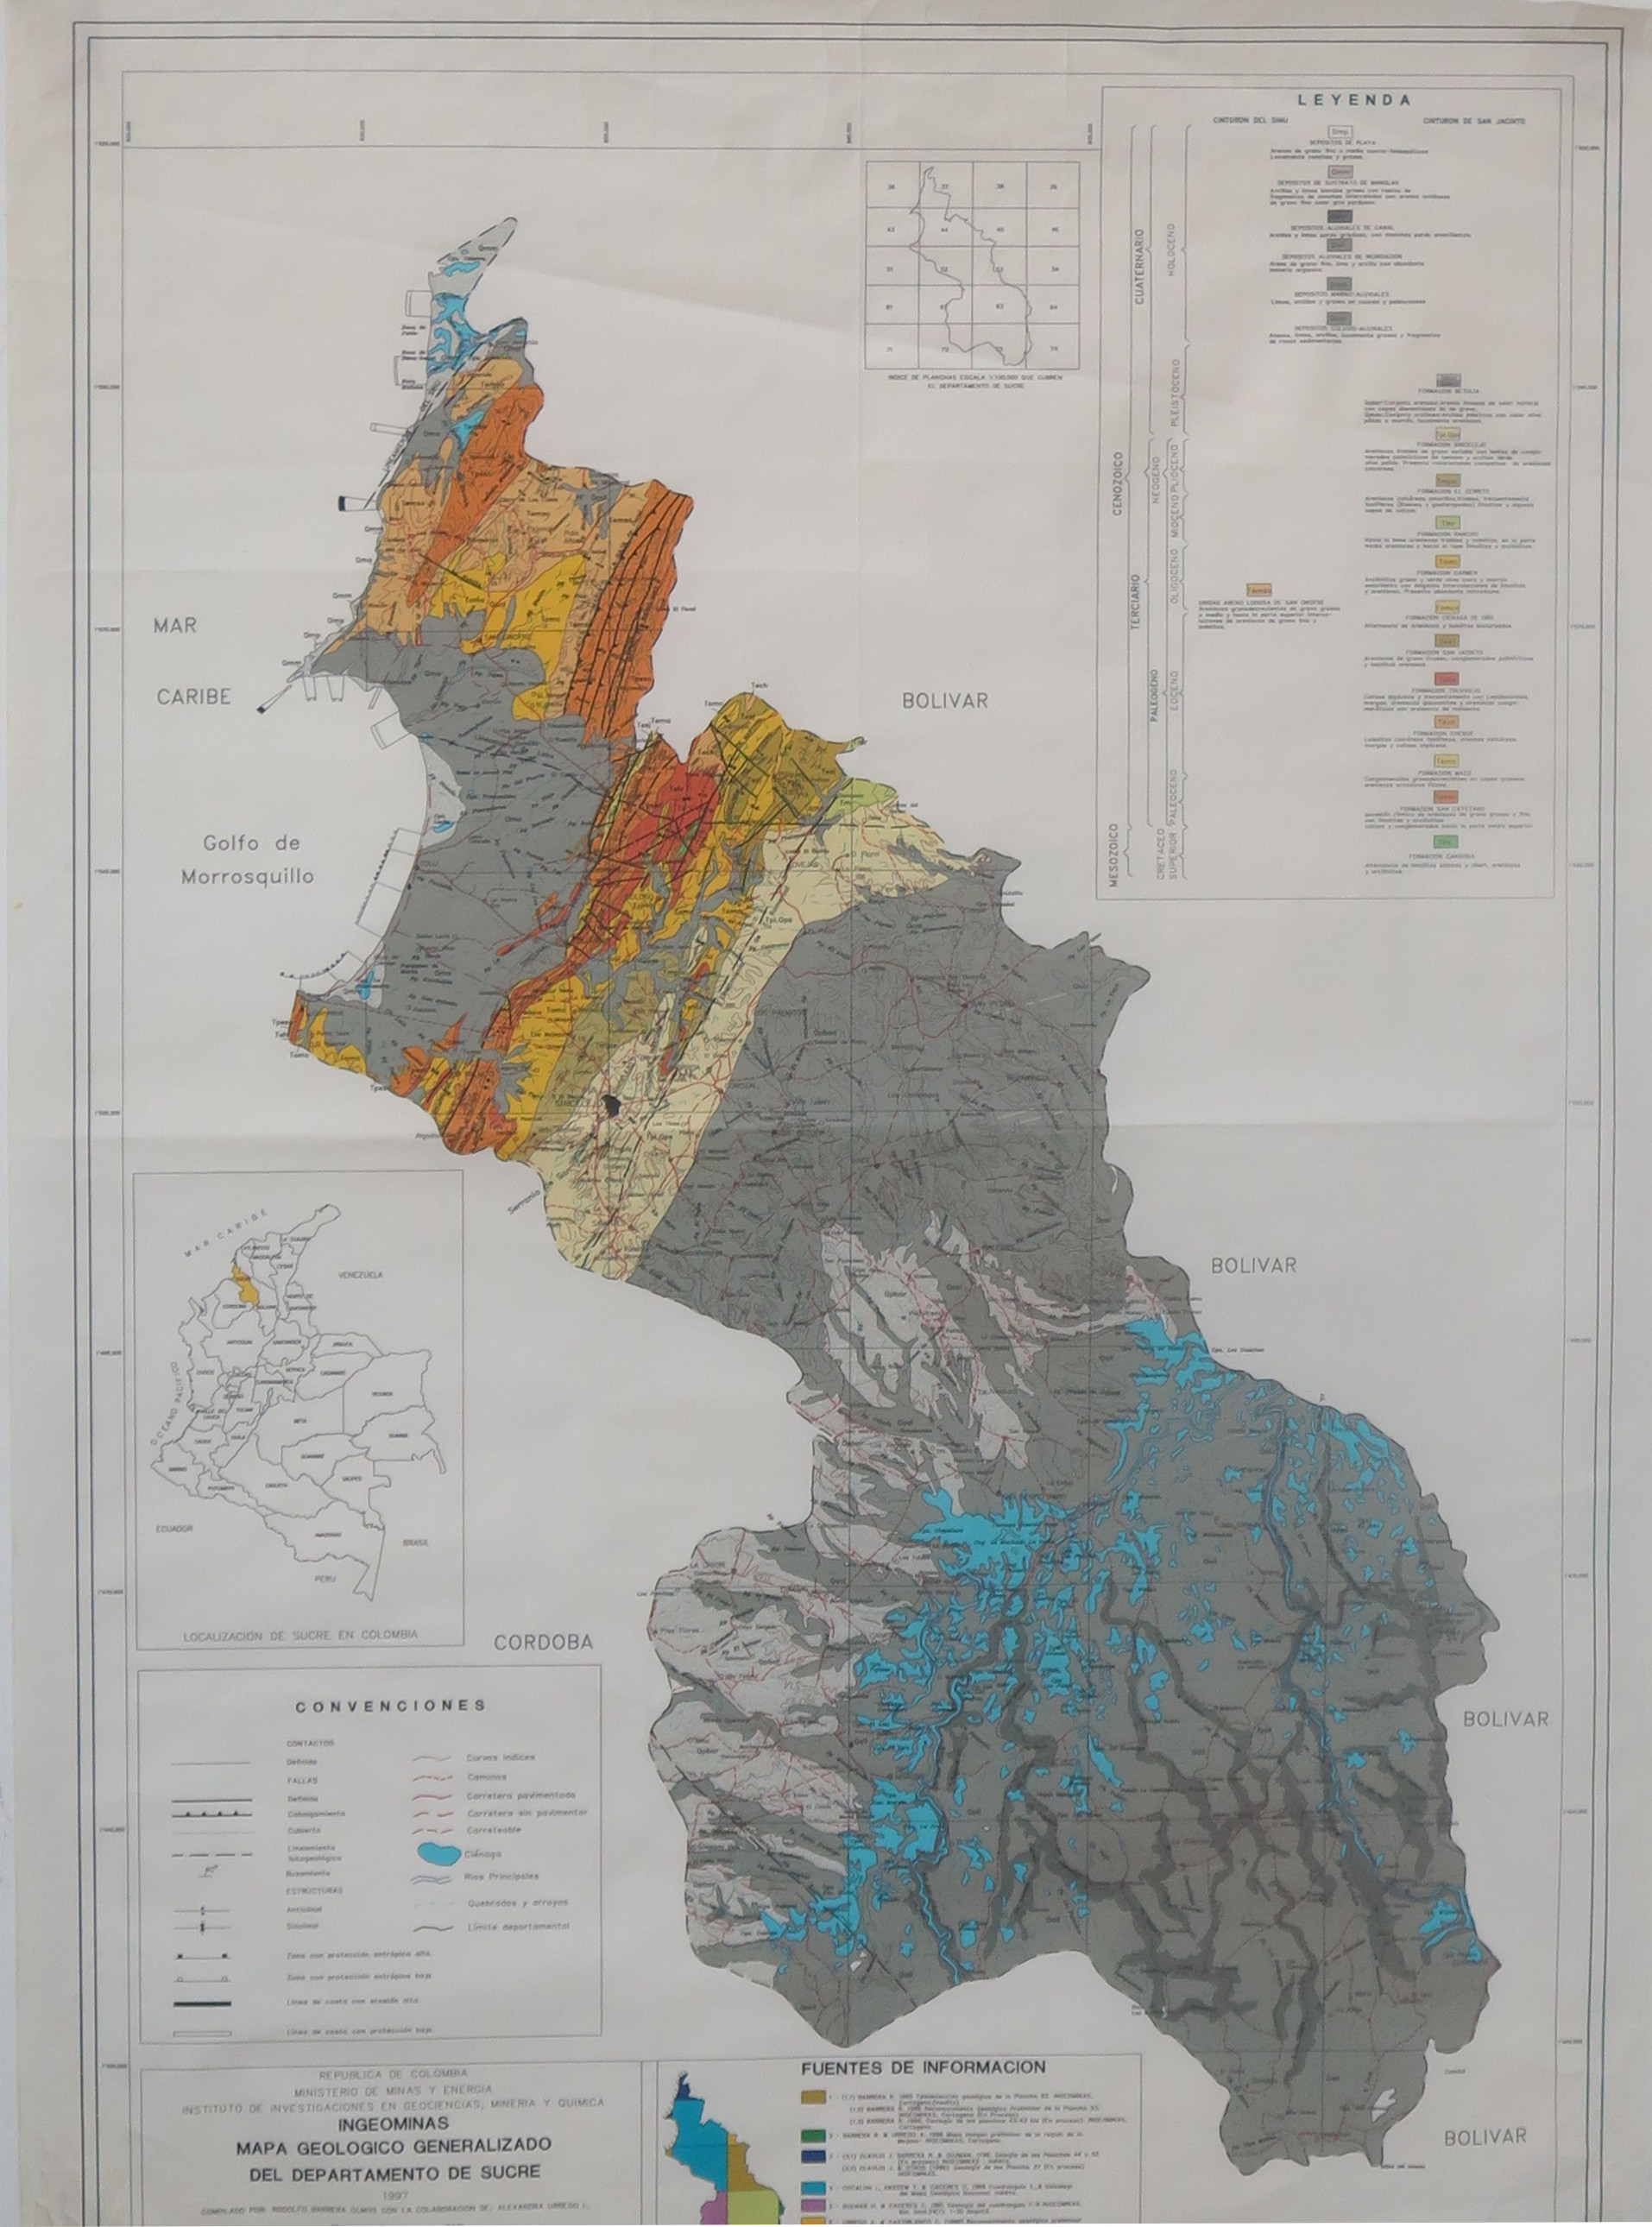 Mapoteca - Mapa Geologico Generalizado del Departamento de Sucre